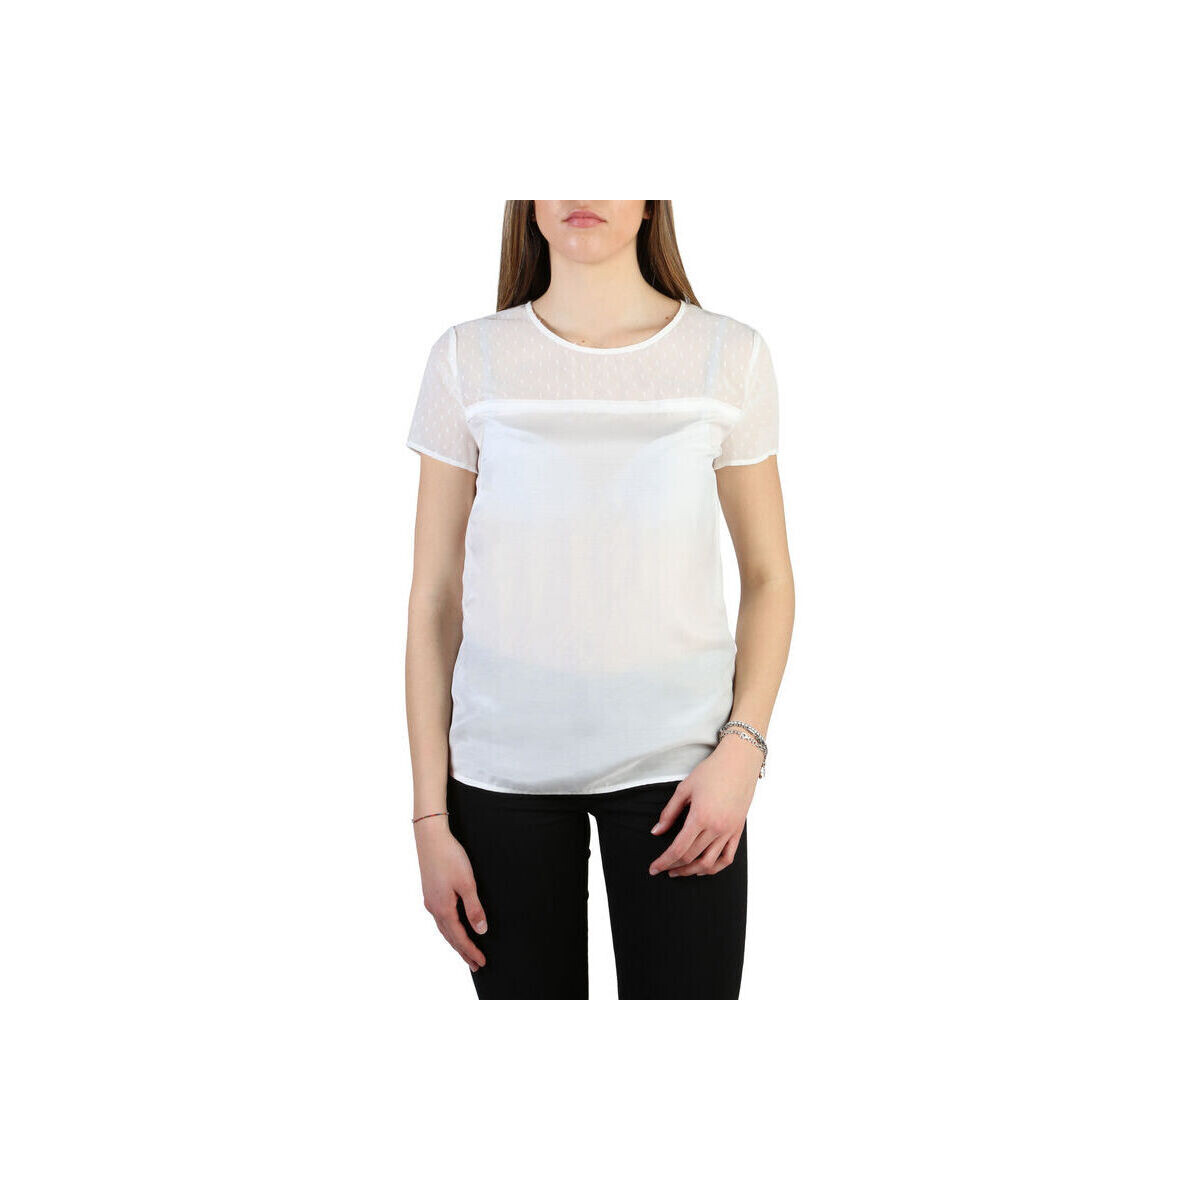 tekstylia Damskie T-shirty z krótkim rękawem Armani jeans - 3y5h45_5nzsz Biały